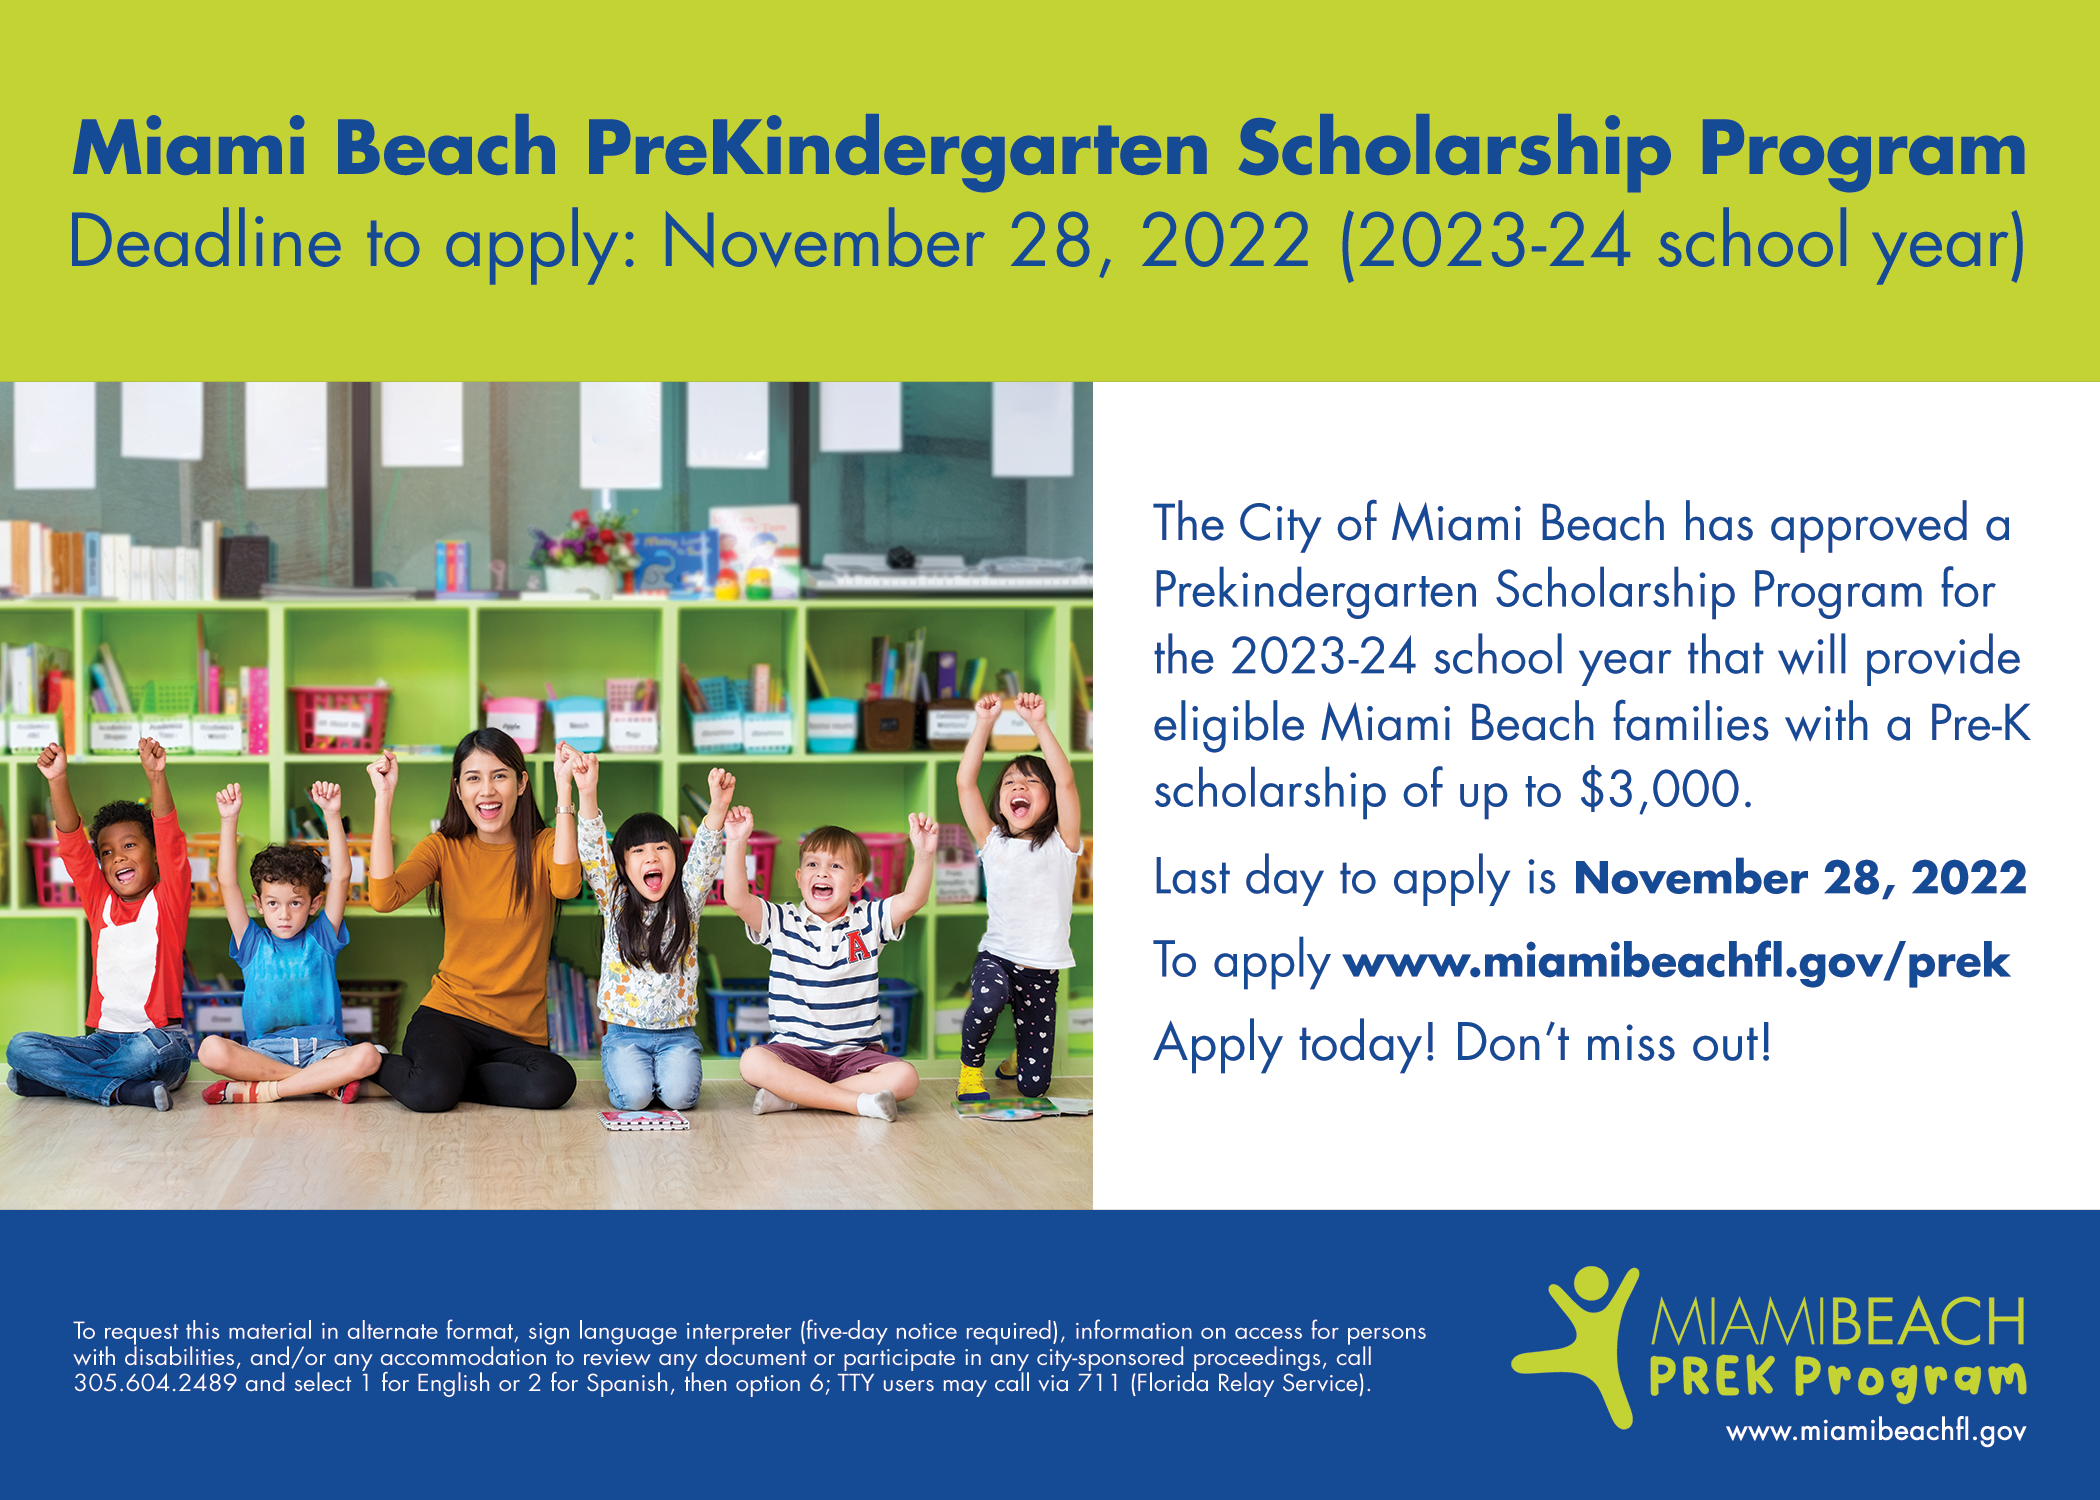 Miami Beach PreKindergarten Scholarship Program